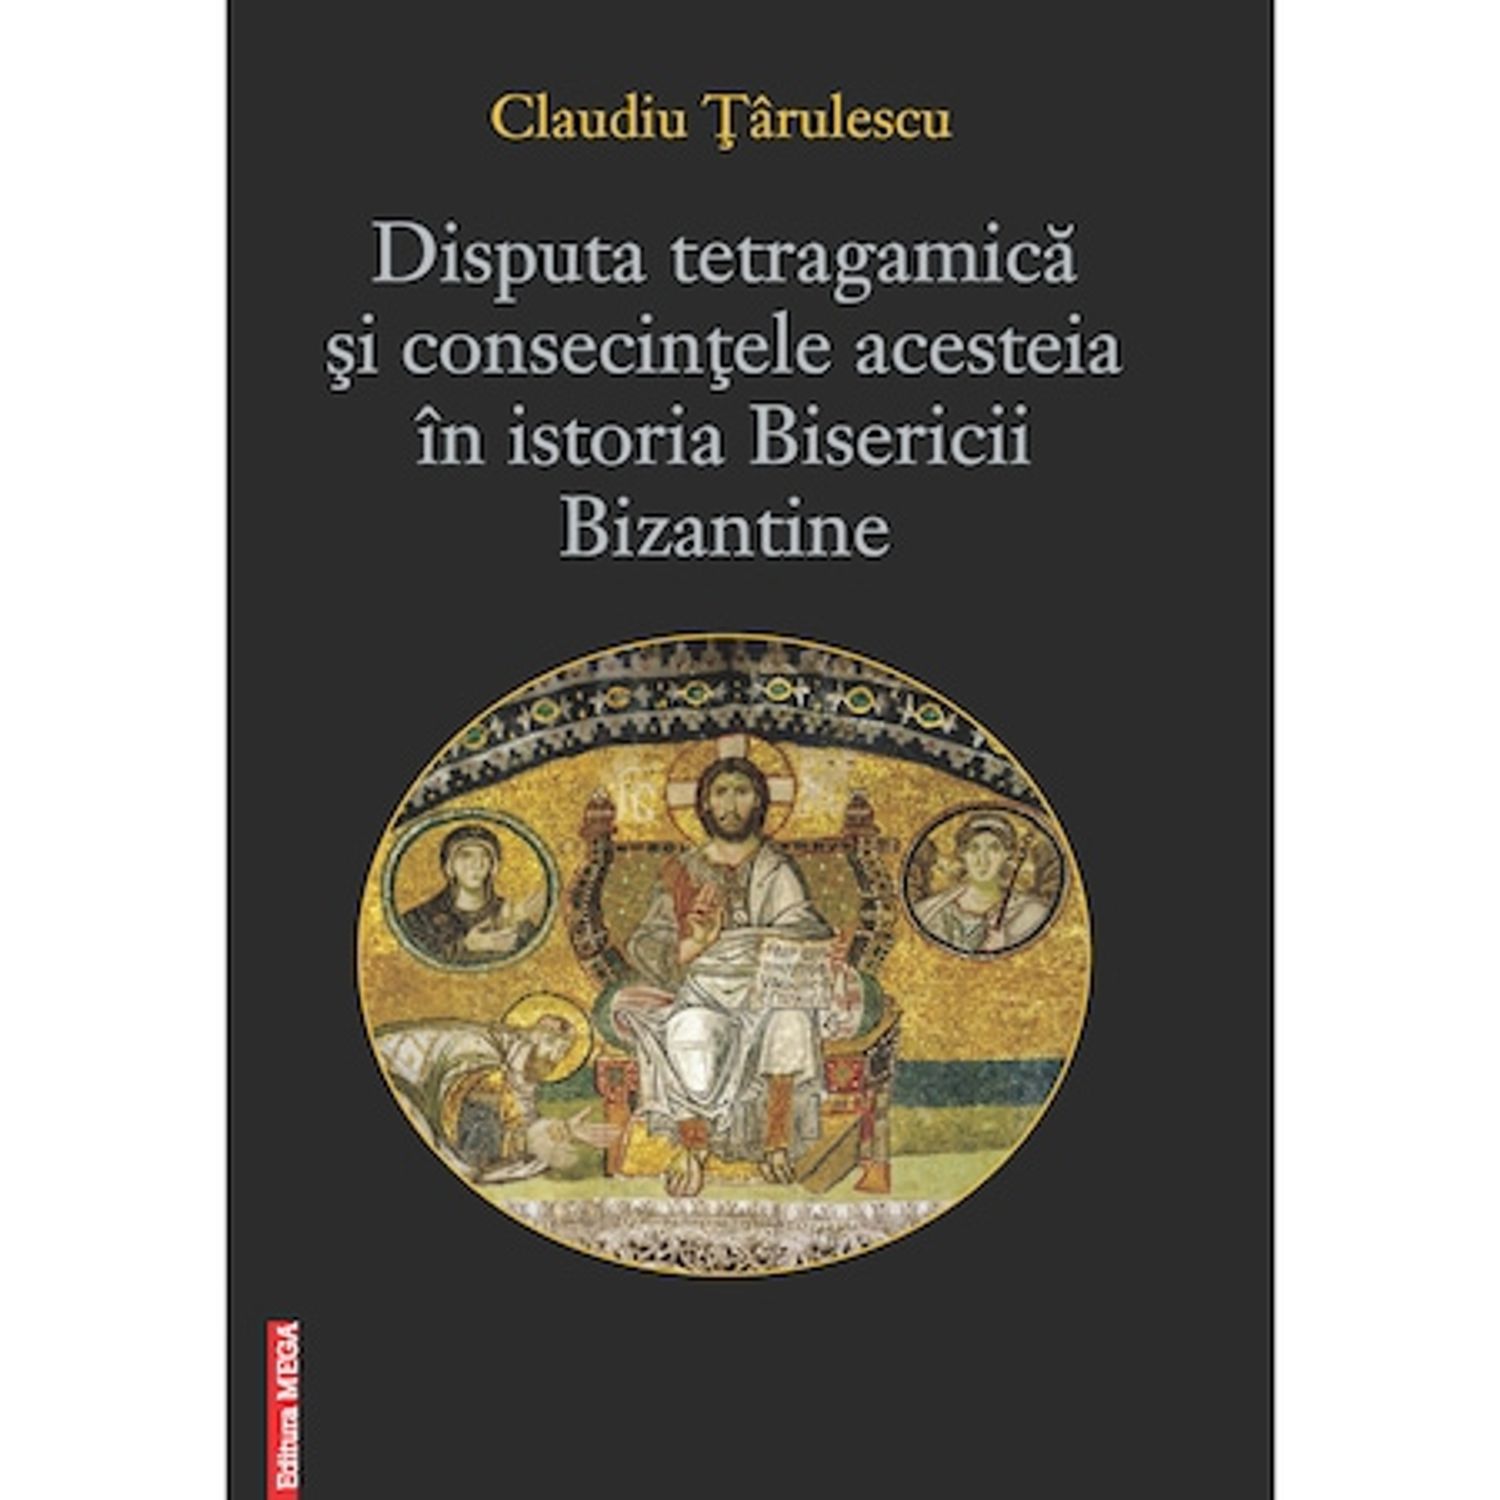 Disputa tetragamica si consecintele acesteia in istoria Bisericii Bizantine